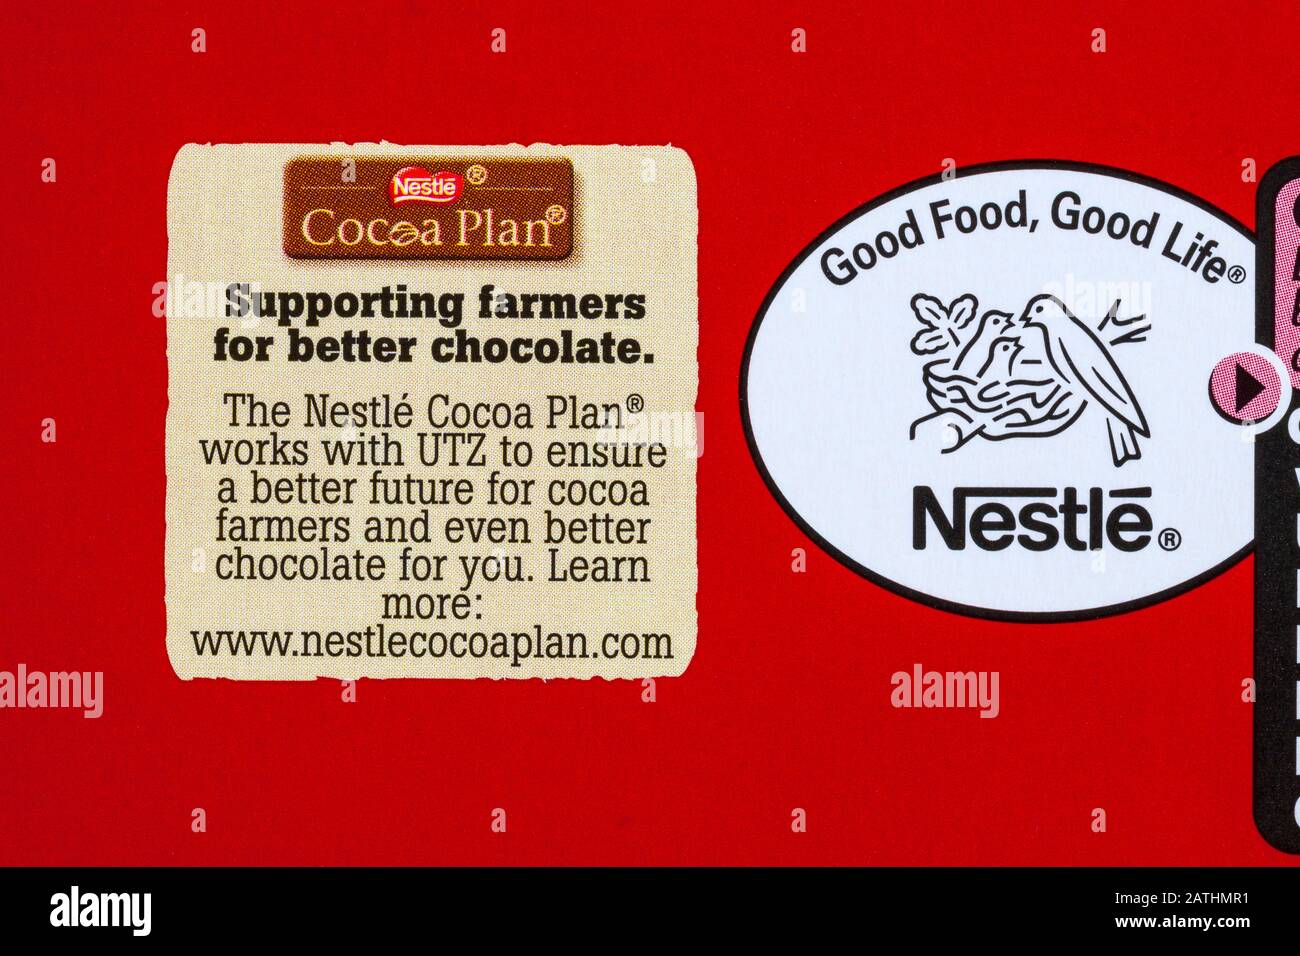 Nestle Cocoa Plan soutenir les agriculteurs pour un meilleur chocolat - détail sur la boîte de Nestle KitKat sélection chunky - Bonne nourriture bonne vie Banque D'Images